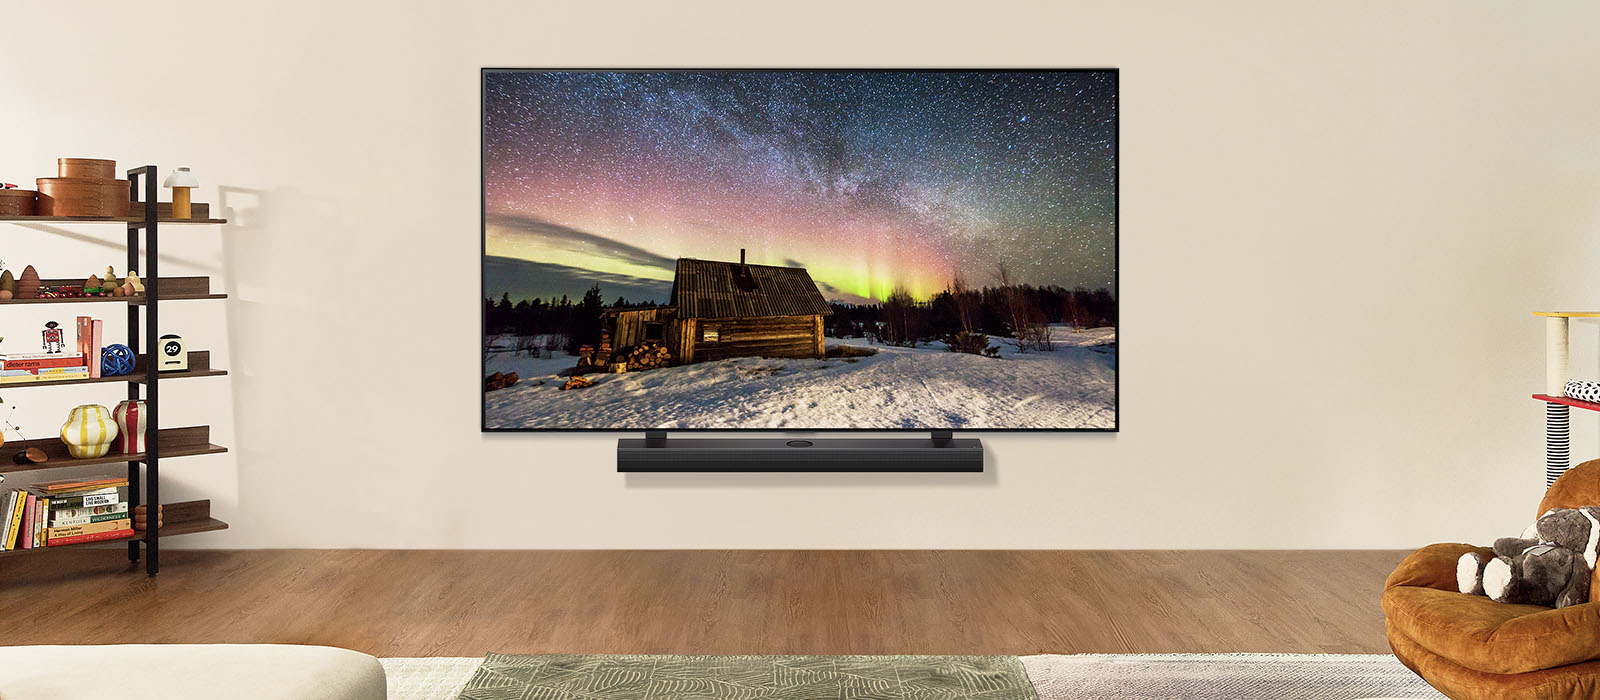 O imagine a unui LG TV și LG Soundbar într-un spațiu de locuit modern în timpul zilei. Imaginea aurorei boreale este afișată cu nivelurile ideale de luminozitate.